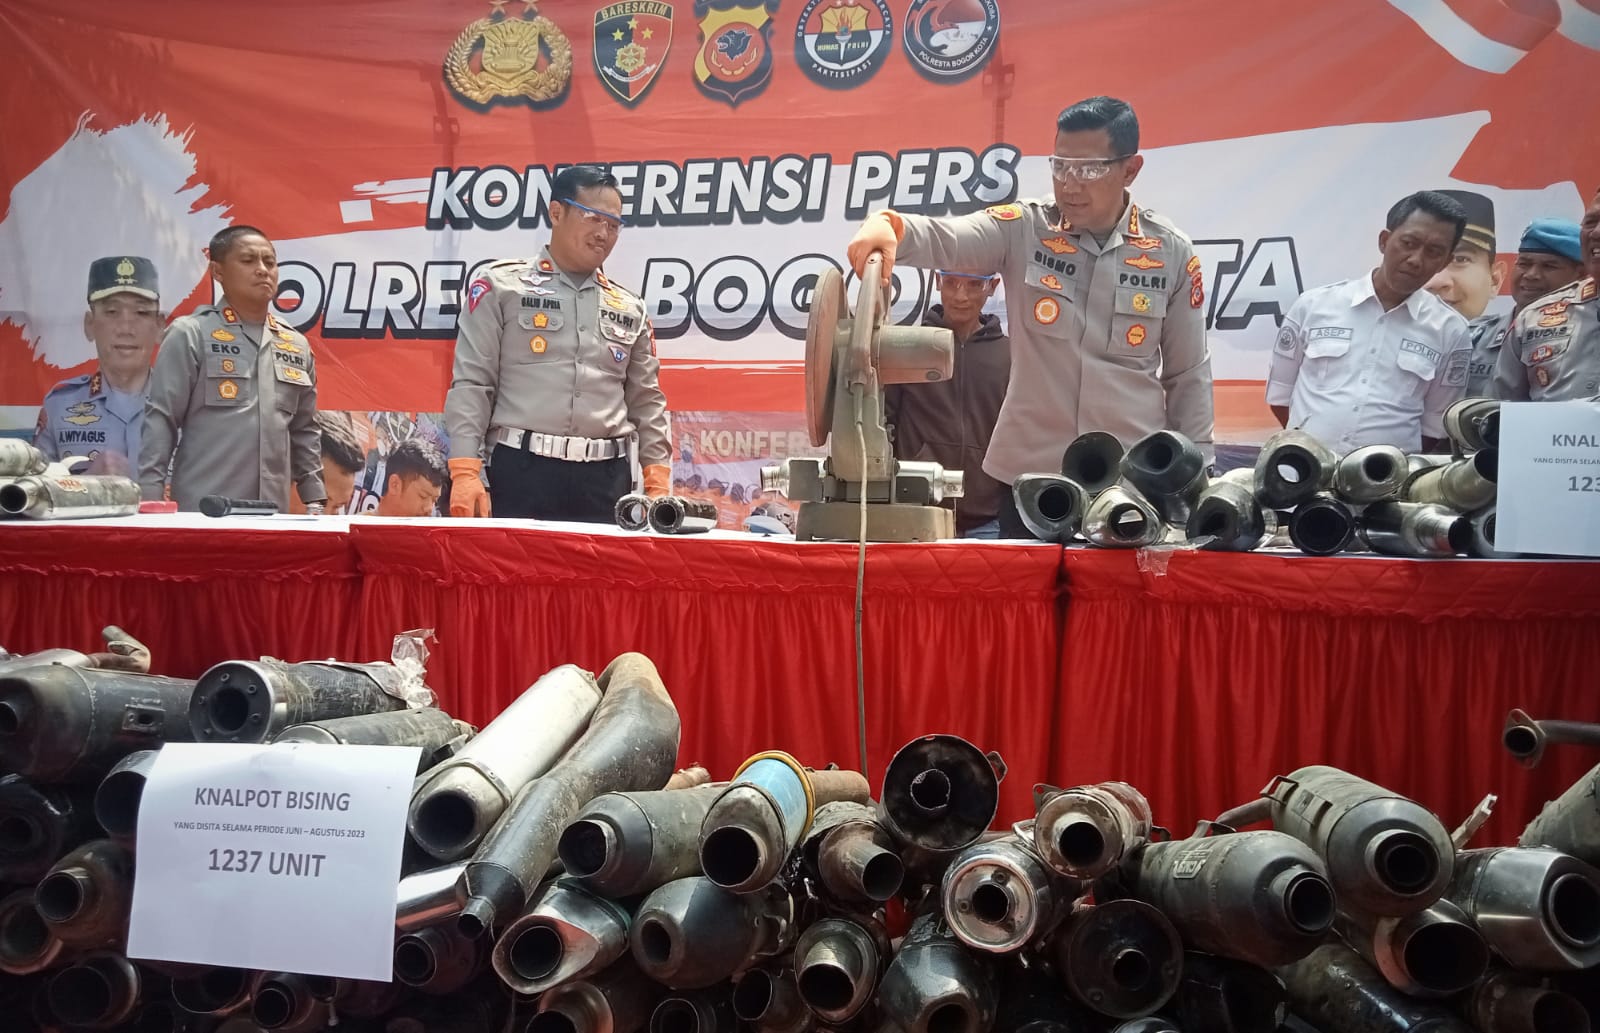 Ribuan Motor Bising di Kota Bogor Terus Ditertibkan, Satlantas Kembali Sita 1.237 Knalpot Brong